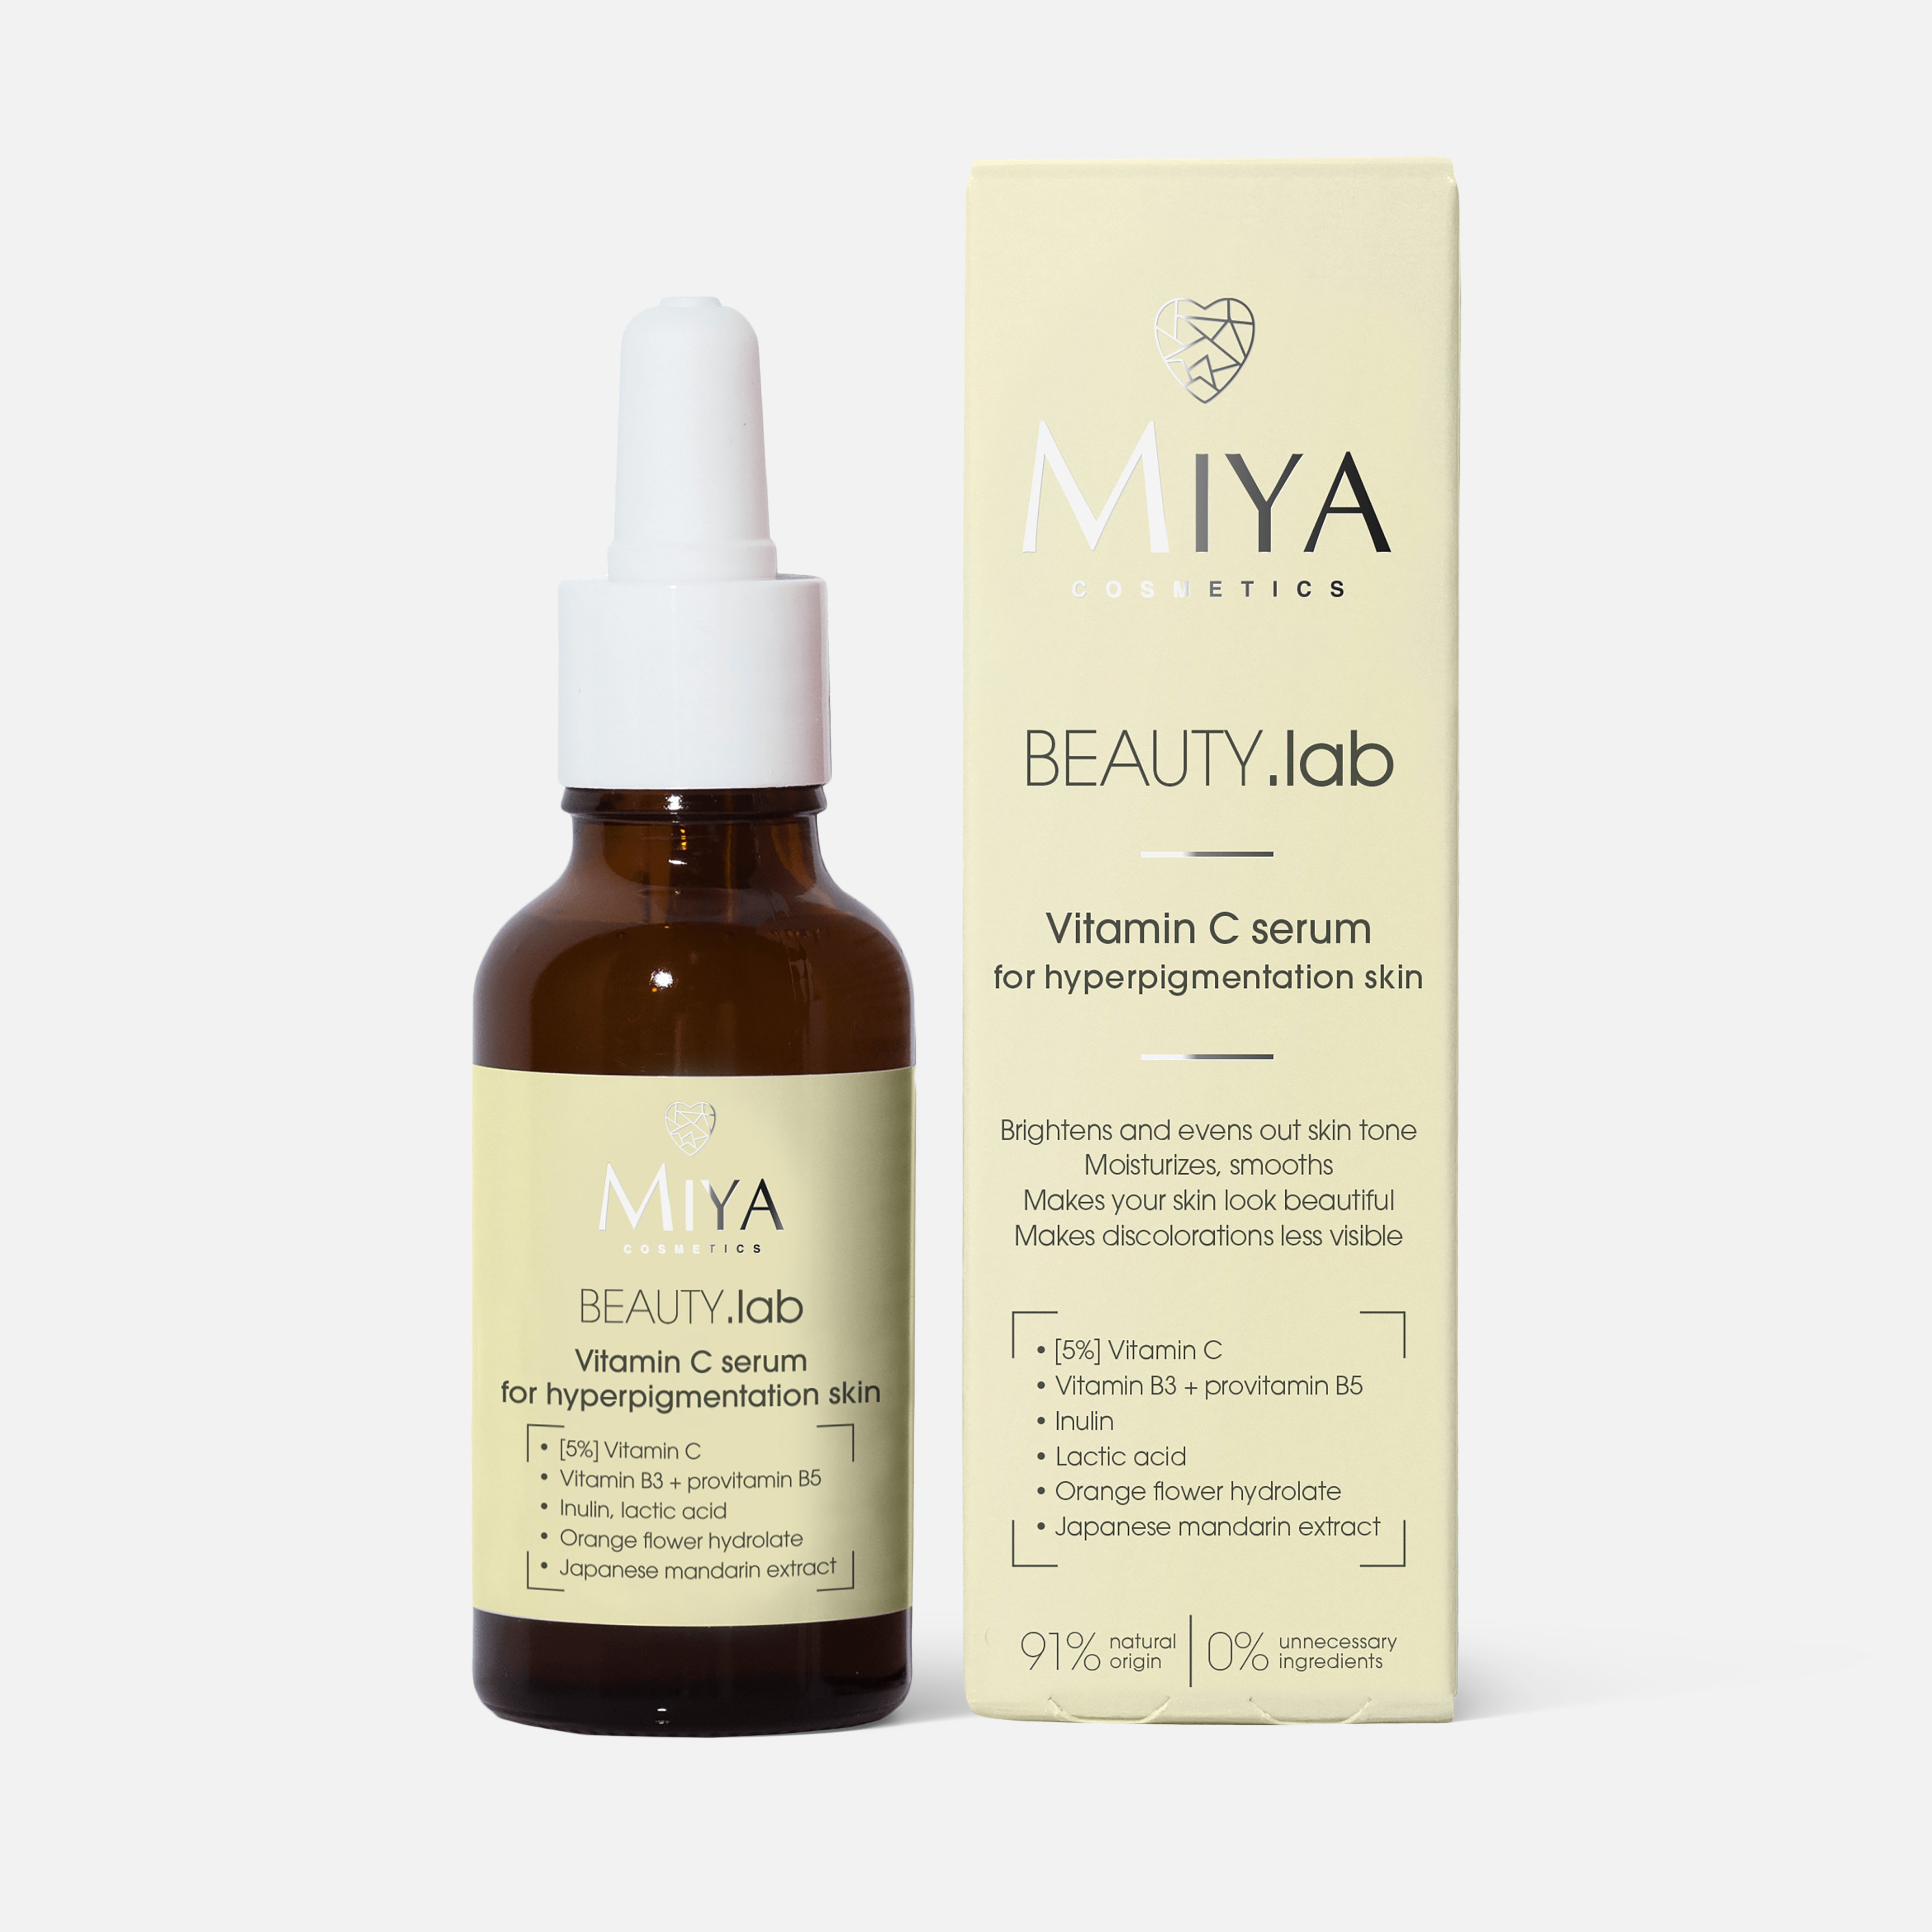 Сыворотка для лица Miya cosmetics Beauty.Lab for hyperpigmentation skin Vitamin C, 30 мл institute estelare сыворотка филлер лифтинг эффект для лица и области глаз 8